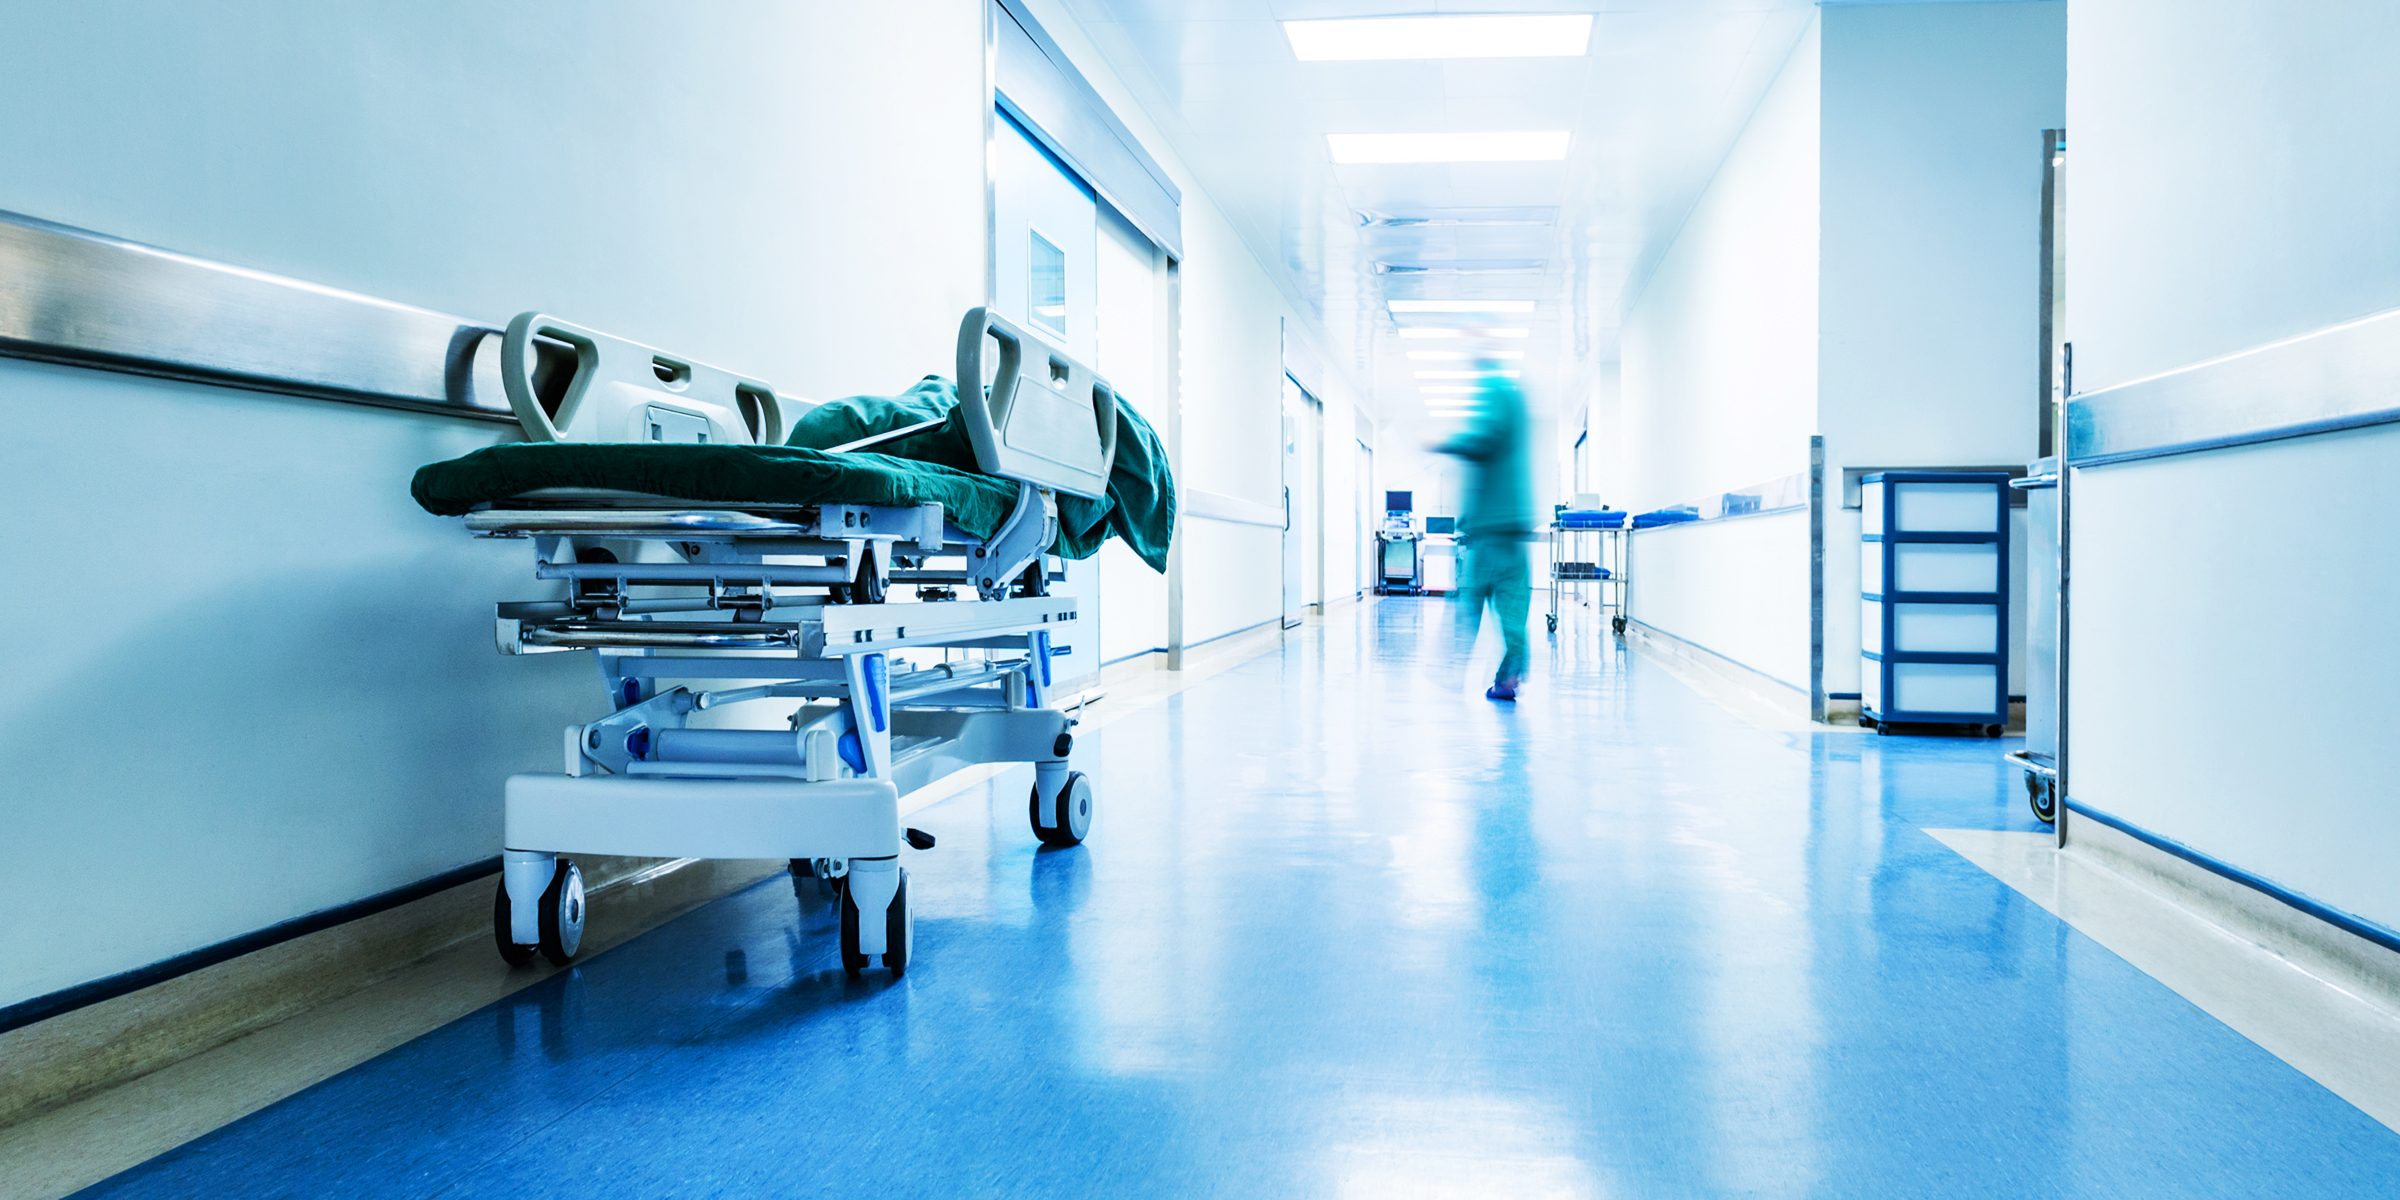 Le couloir d'un hôpital | Source : Shutterstock